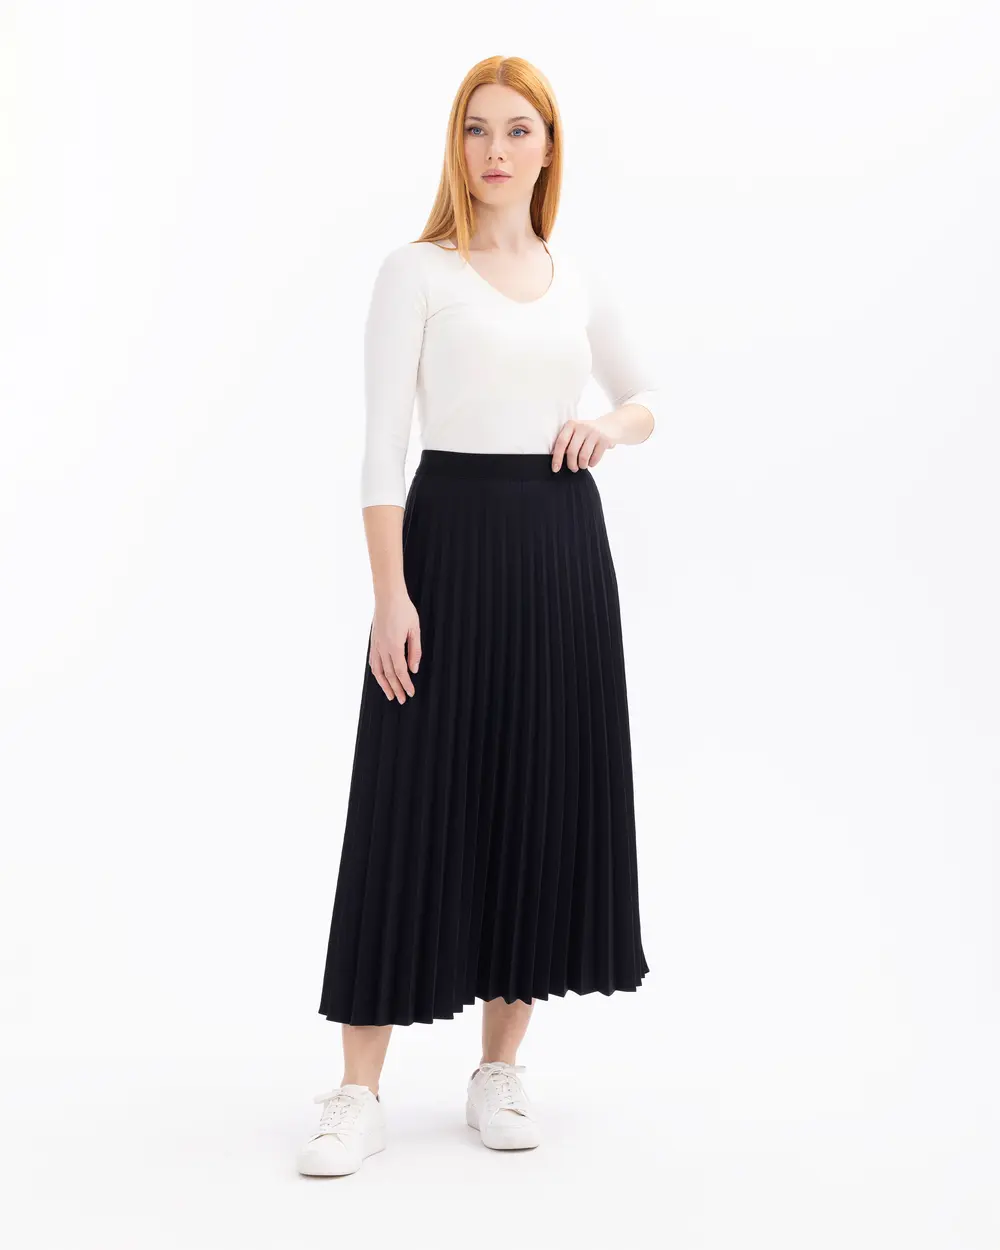 Pleated Elastic Waist Skirt